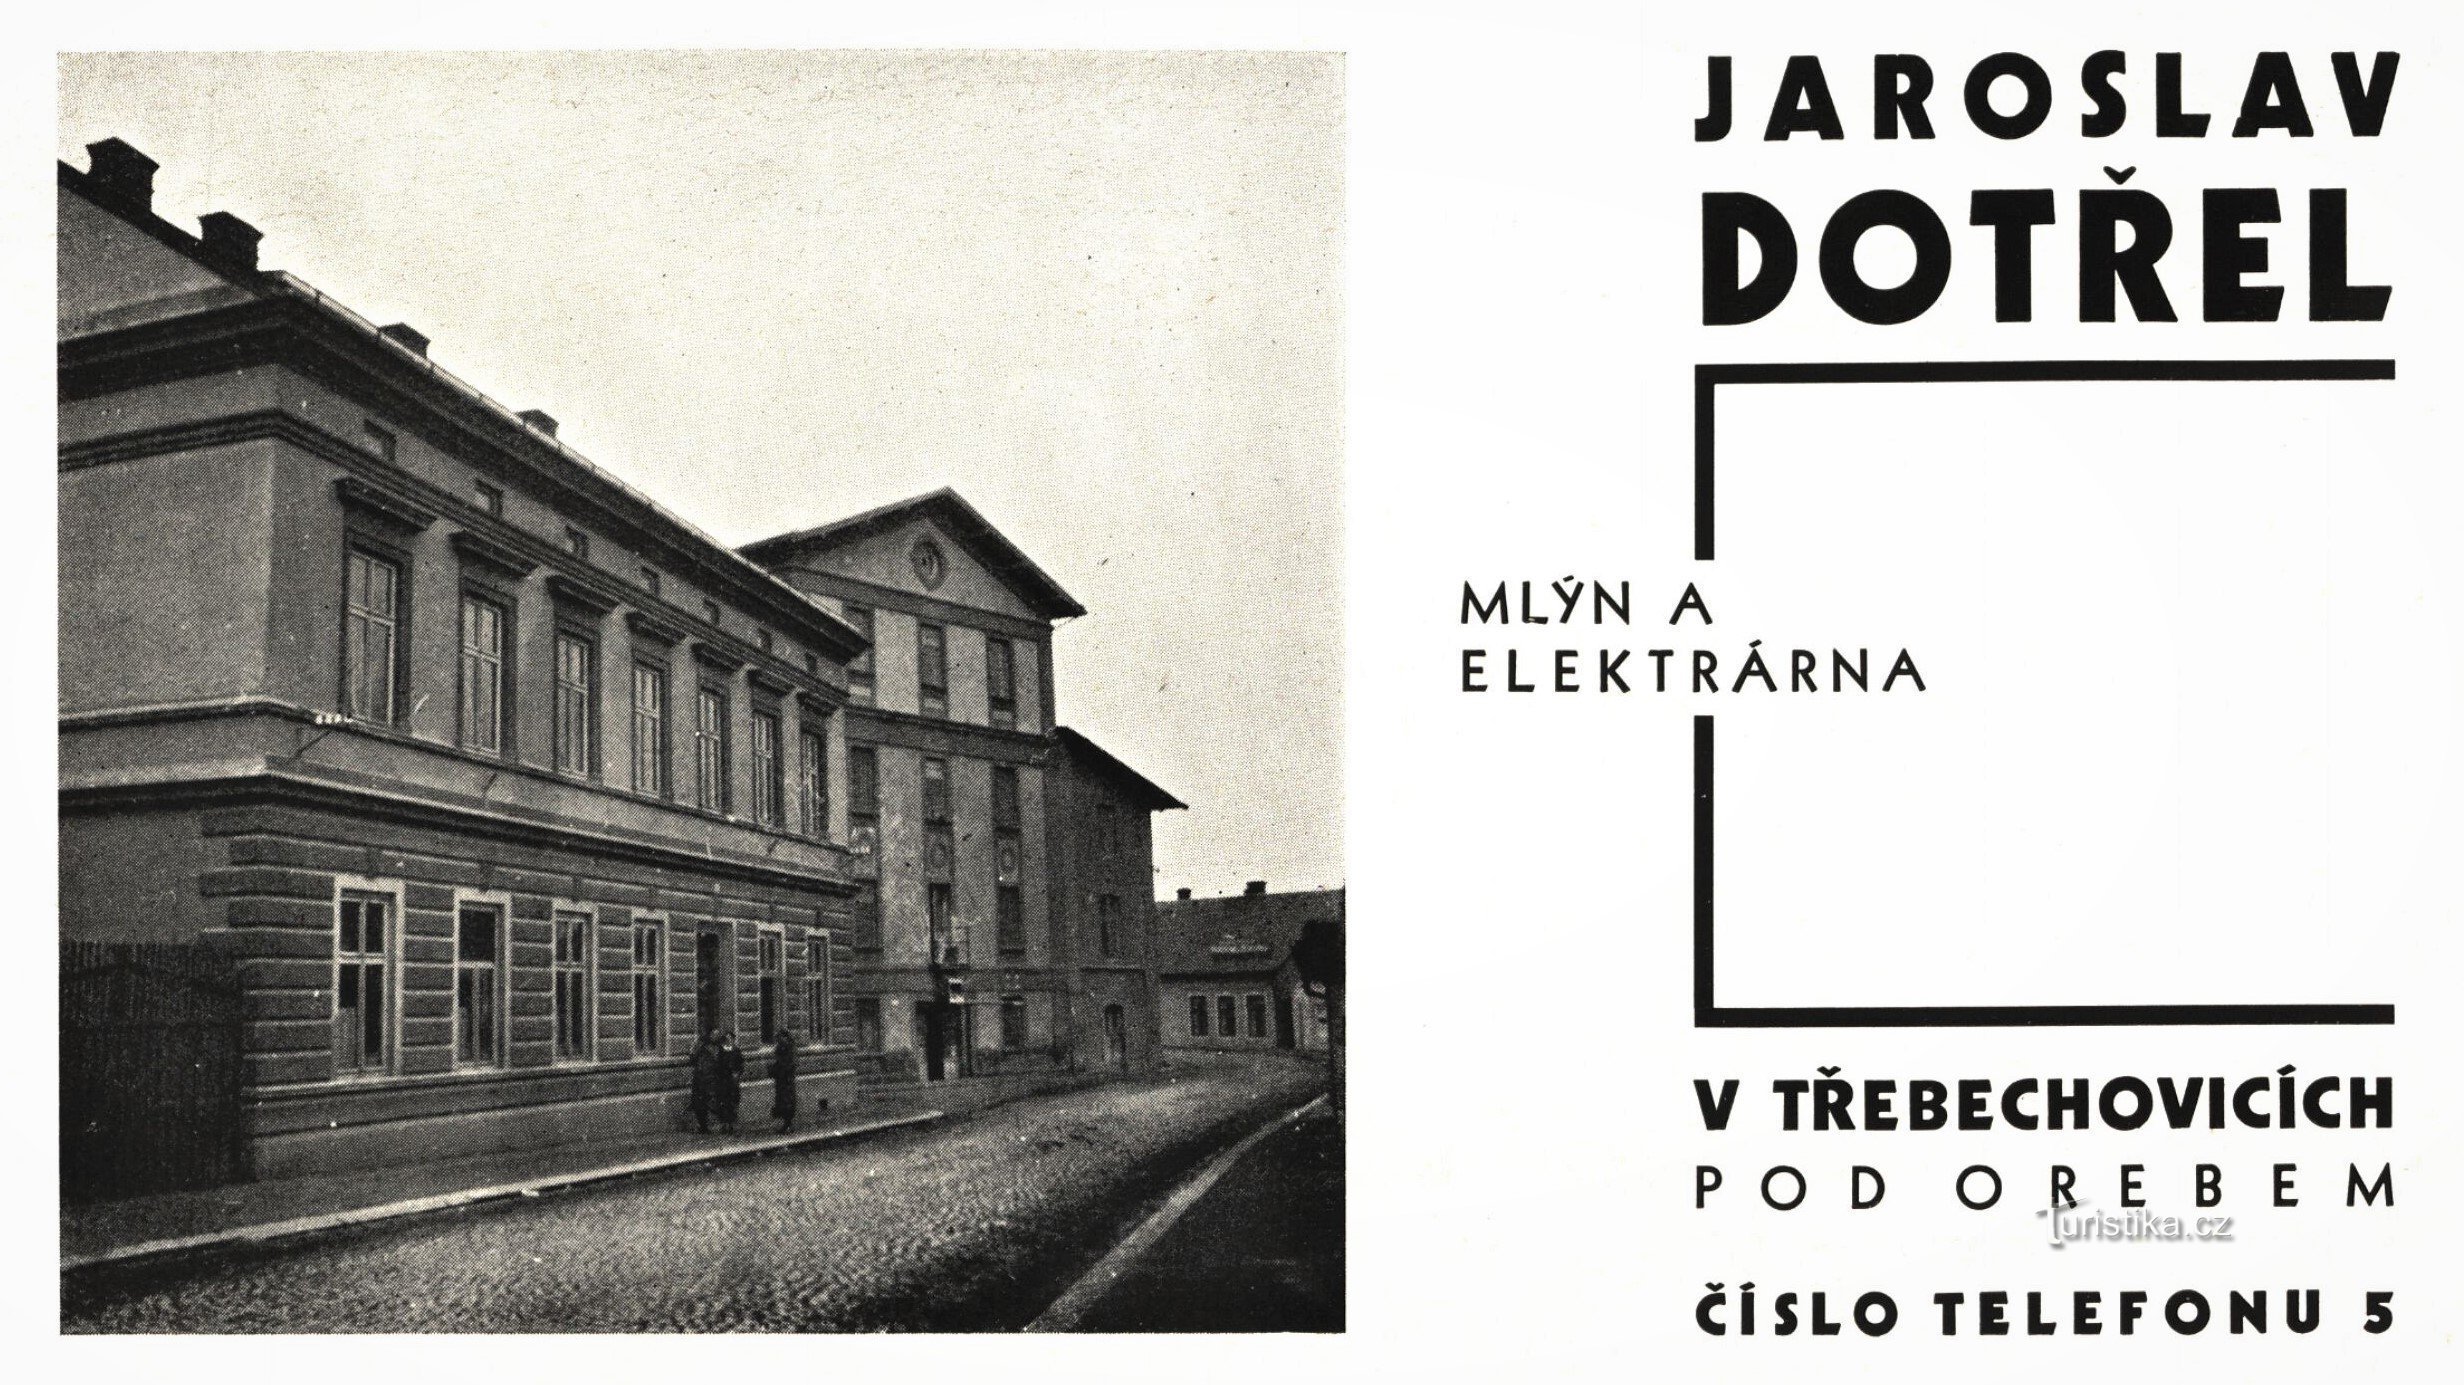 Periode advertentie van molenaar Jaroslav Dotřel (1934)